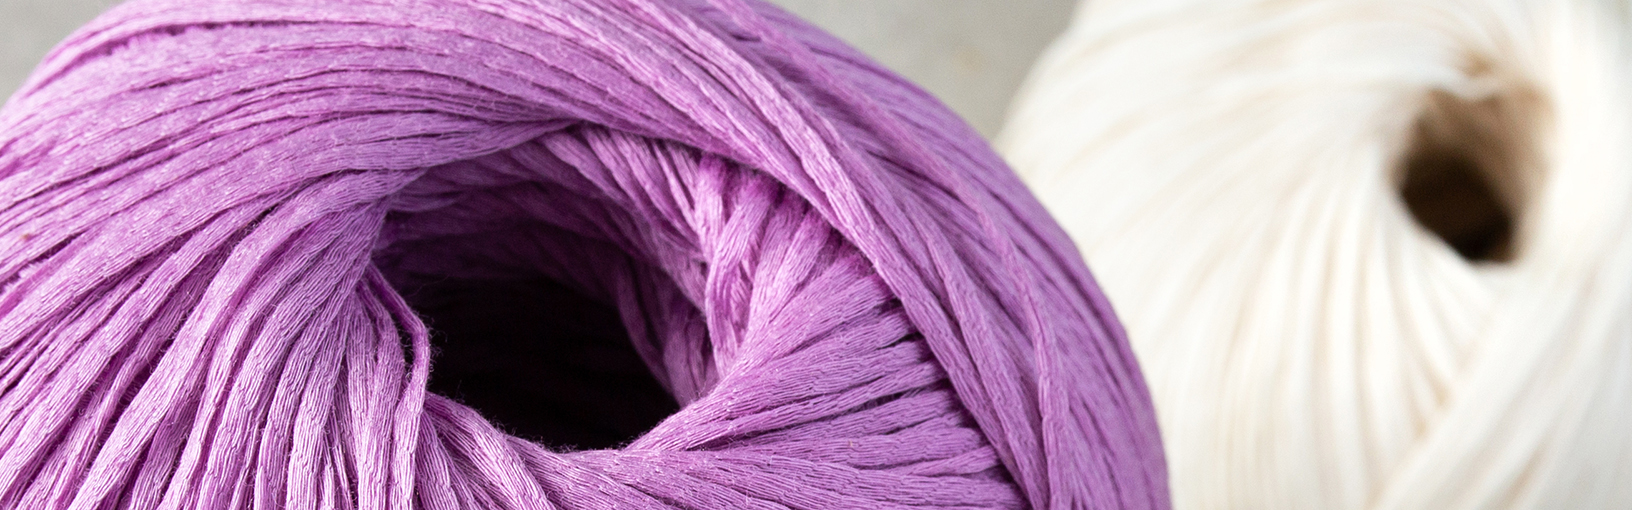 INNOVATIVE, ERGONOMIC - HIGHEST QUALITY Lana Grossa Needles | NEEDLE SETS | Circular knitting needle sets